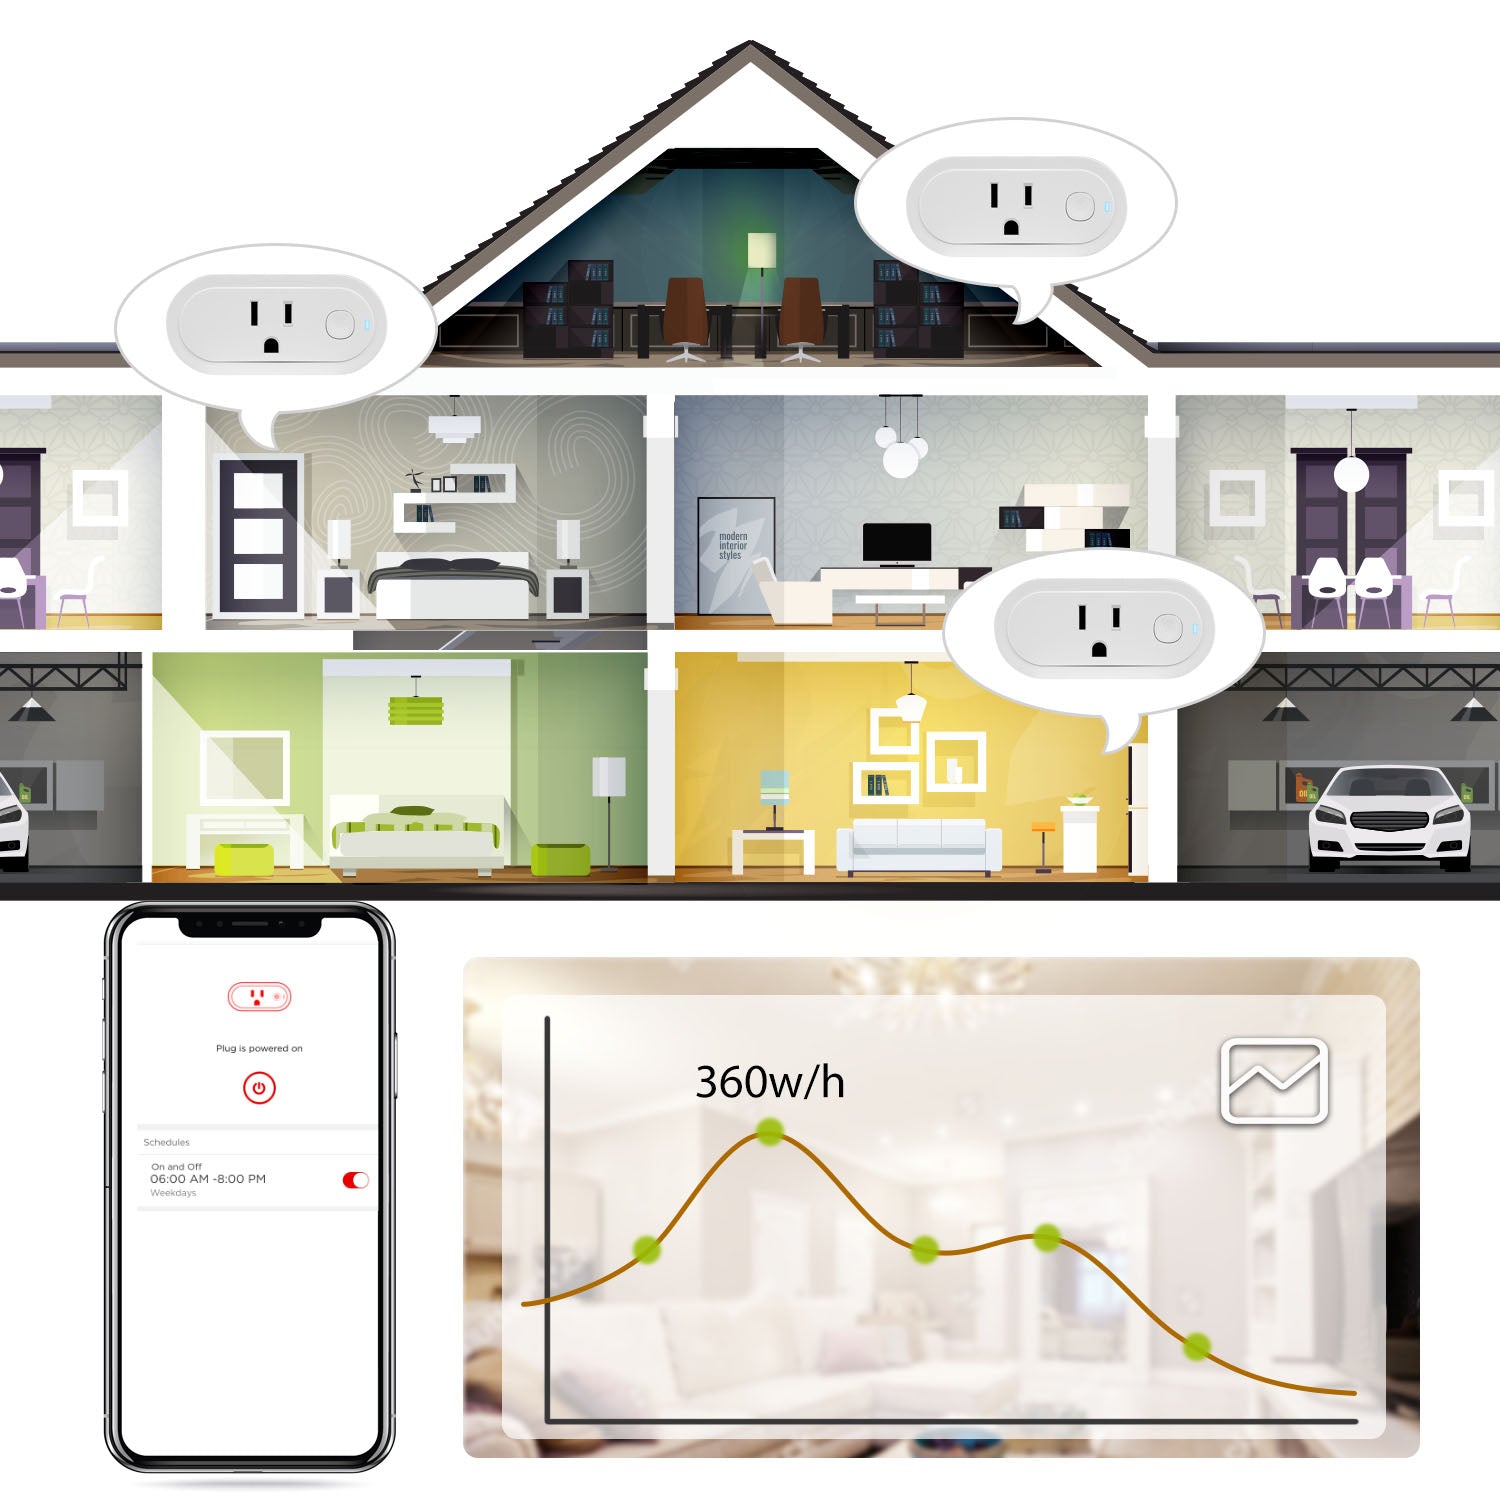 Sengled W20-UBEA Smart Plug Matter compatibile con Alexa e Home Assistant -  Fattelo da Solo